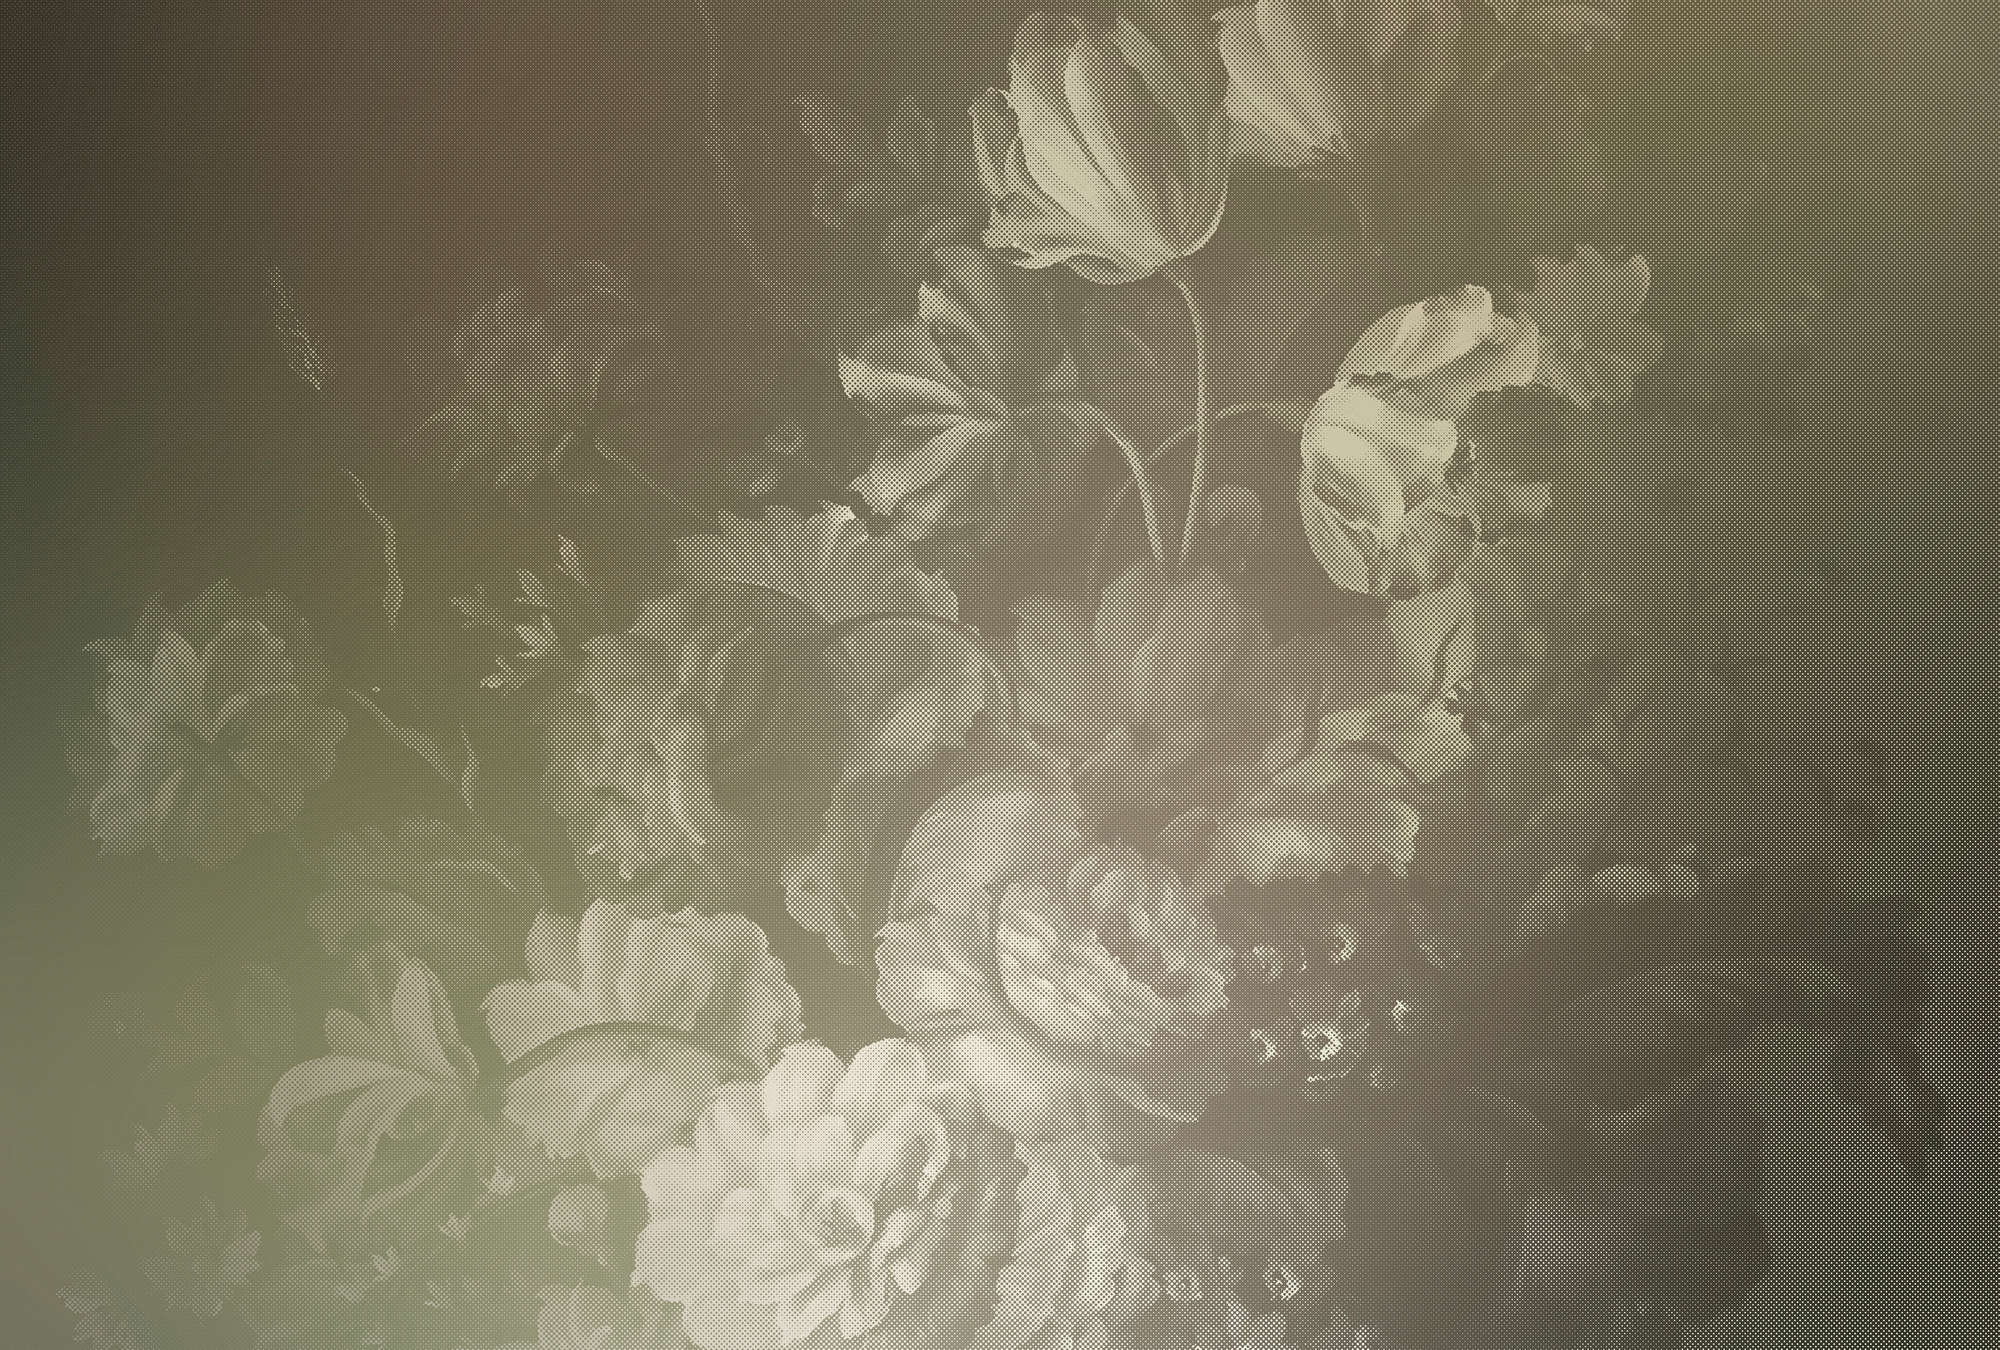             Dutch pastel 4 - Dutch style artistic flower bouquet wallpaper - Taupe | Matt smooth fleece
        